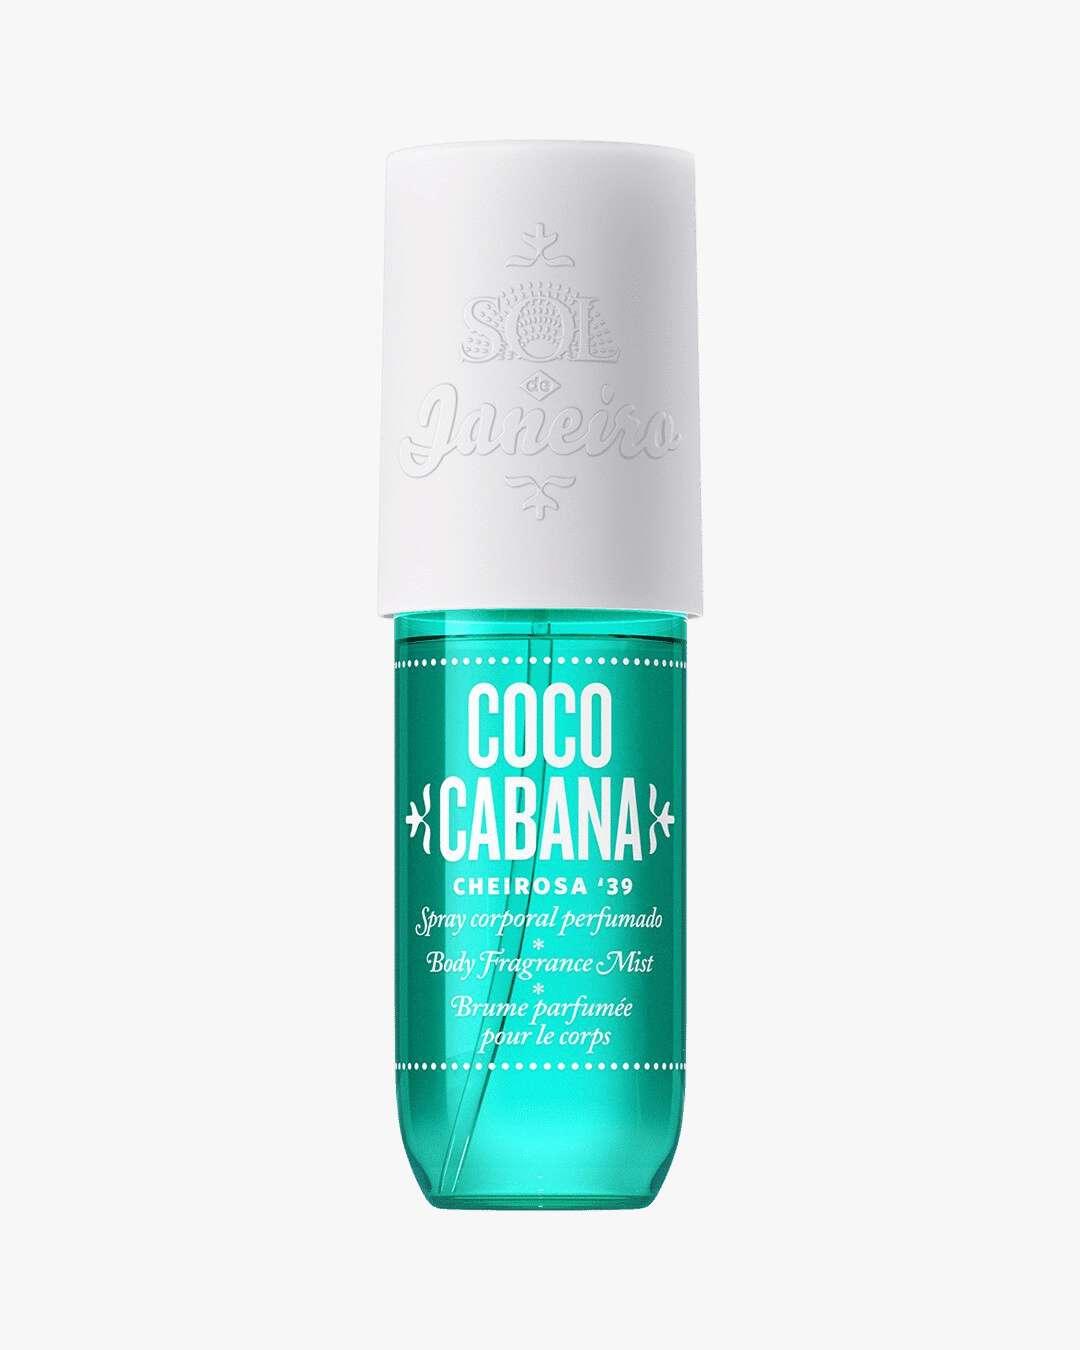 Coco Cabana Fragrance Mist 90ml test